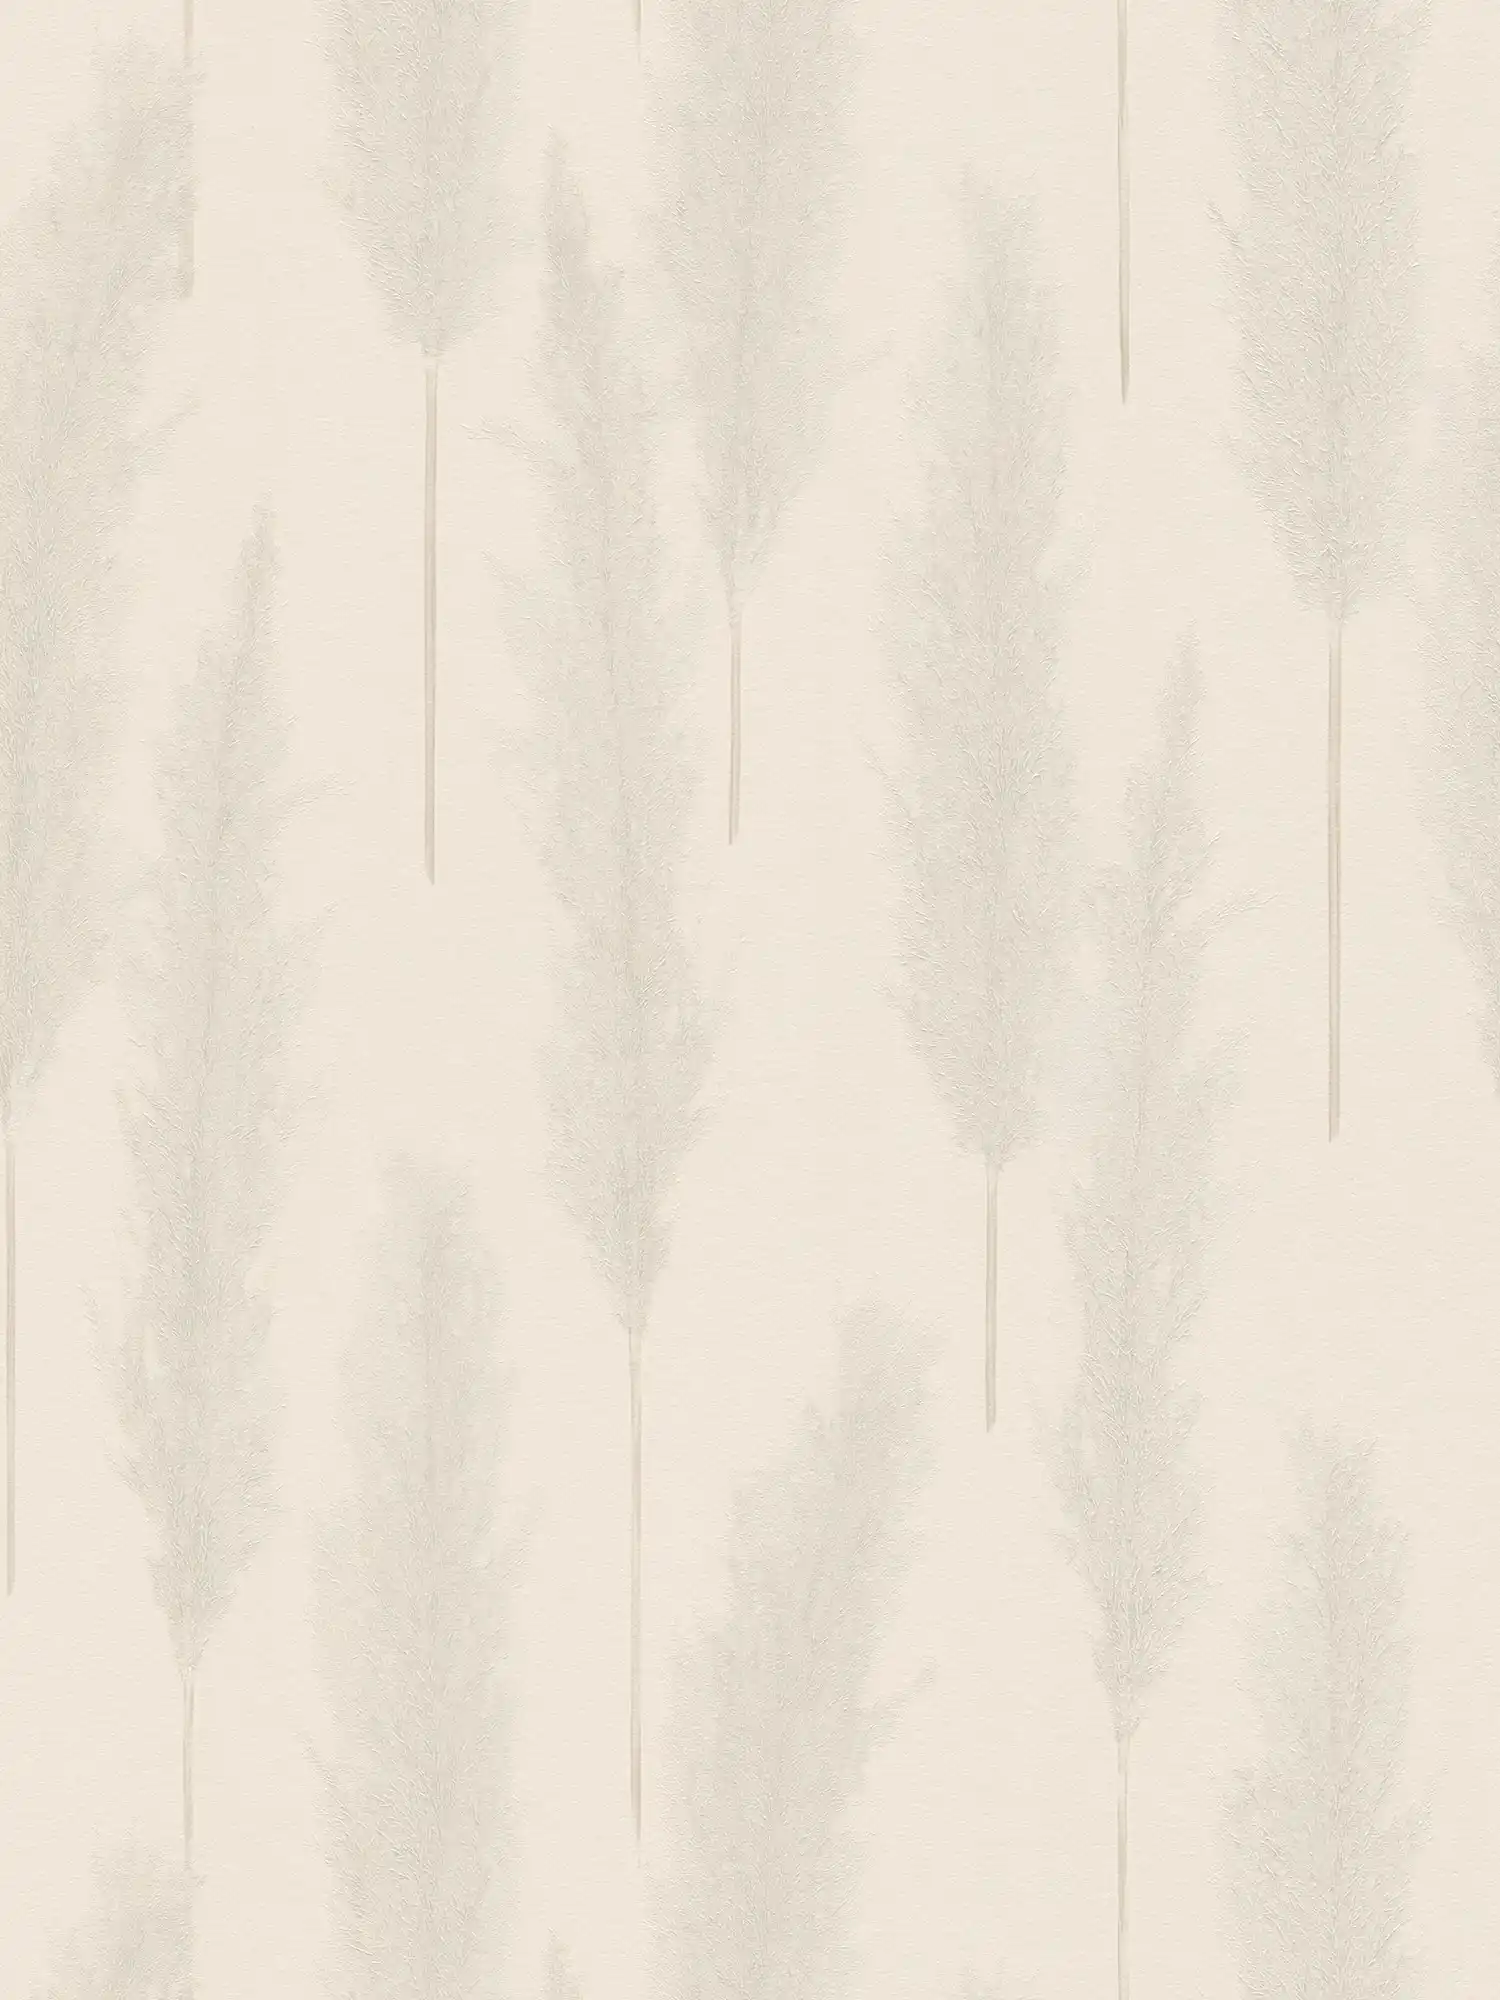 Carta da parati con motivo erba della pampa - beige, grigio, bianco
